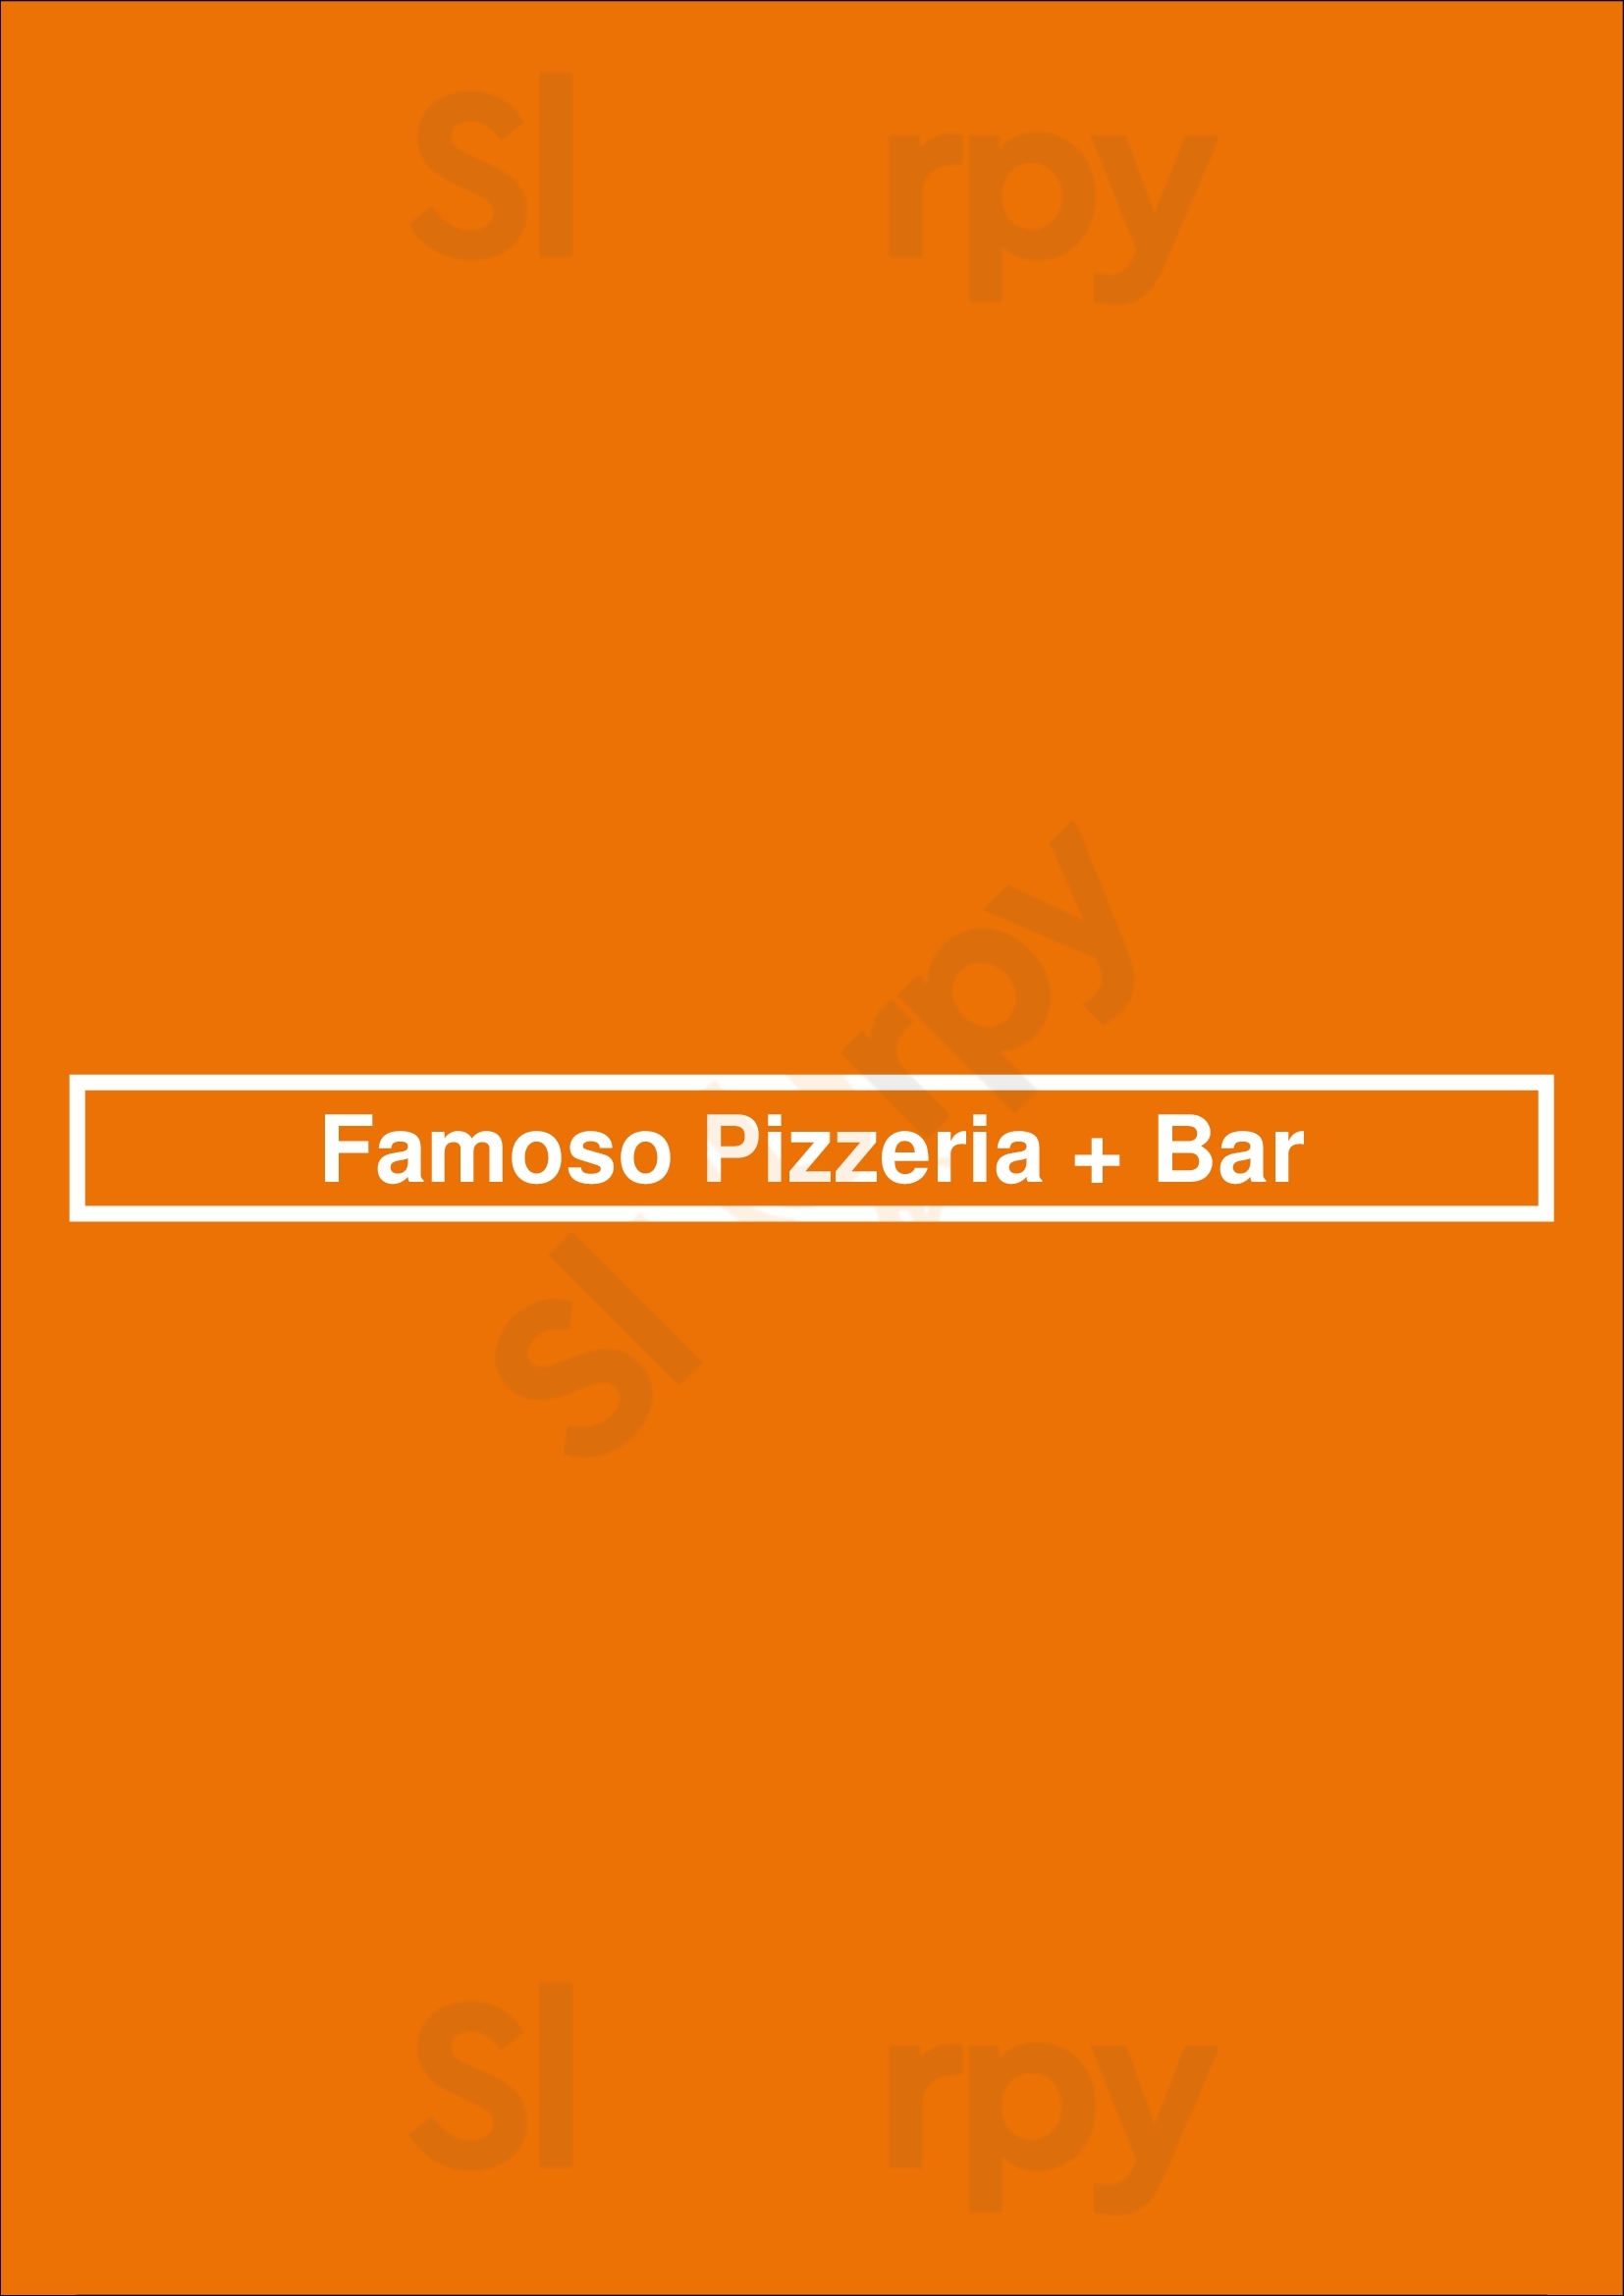 Famoso Pizzeria + Bar Kelowna Menu - 1